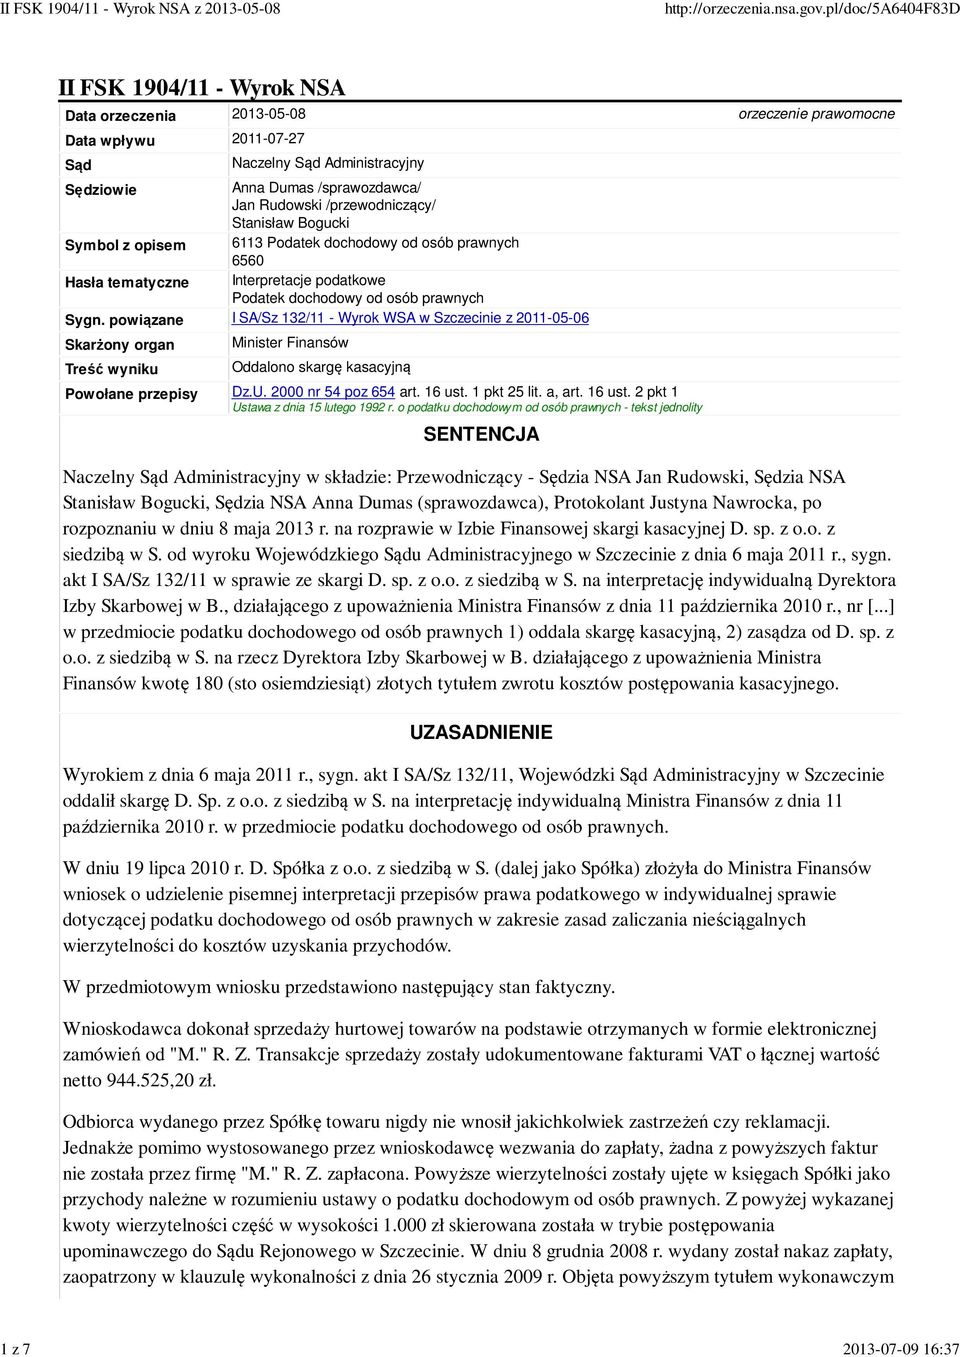 powiązane I SA/Sz 132/11 - Wyrok WSA w Szczecinie z 2011-05-06 Skarżony organ Treść wyniku Minister Finansów Oddalono skargę kasacyjną Powołane przepisy Dz.U. 2000 nr 54 poz 654 art. 16 ust.